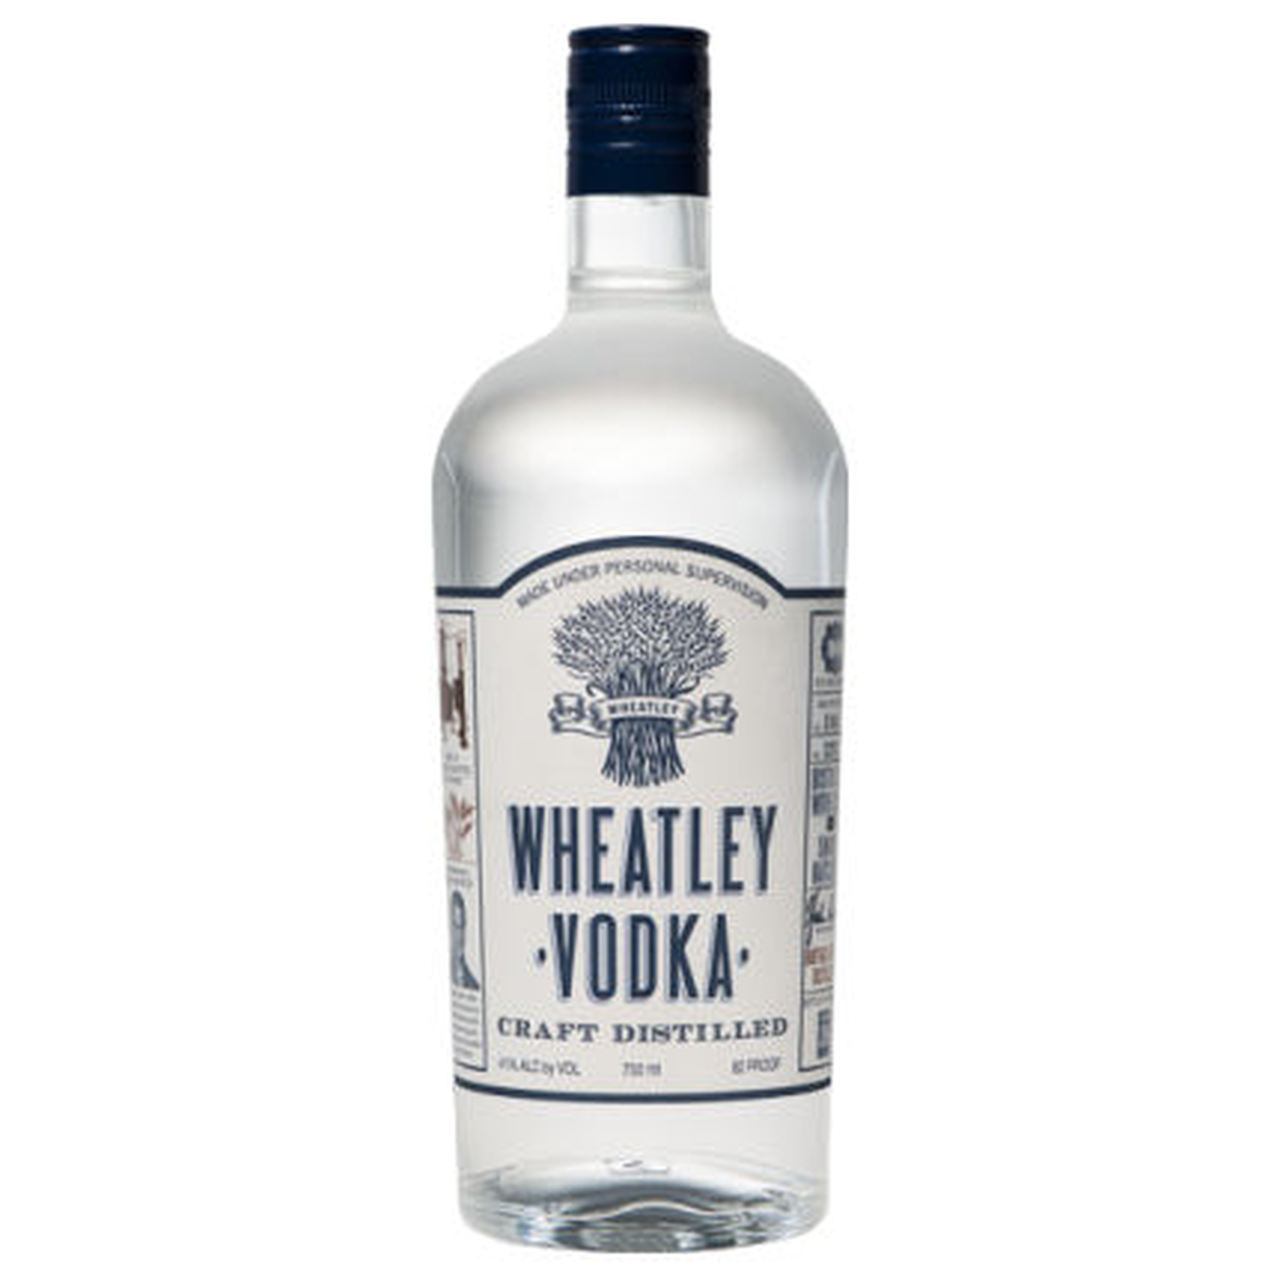 5. Wheatley Vodka 